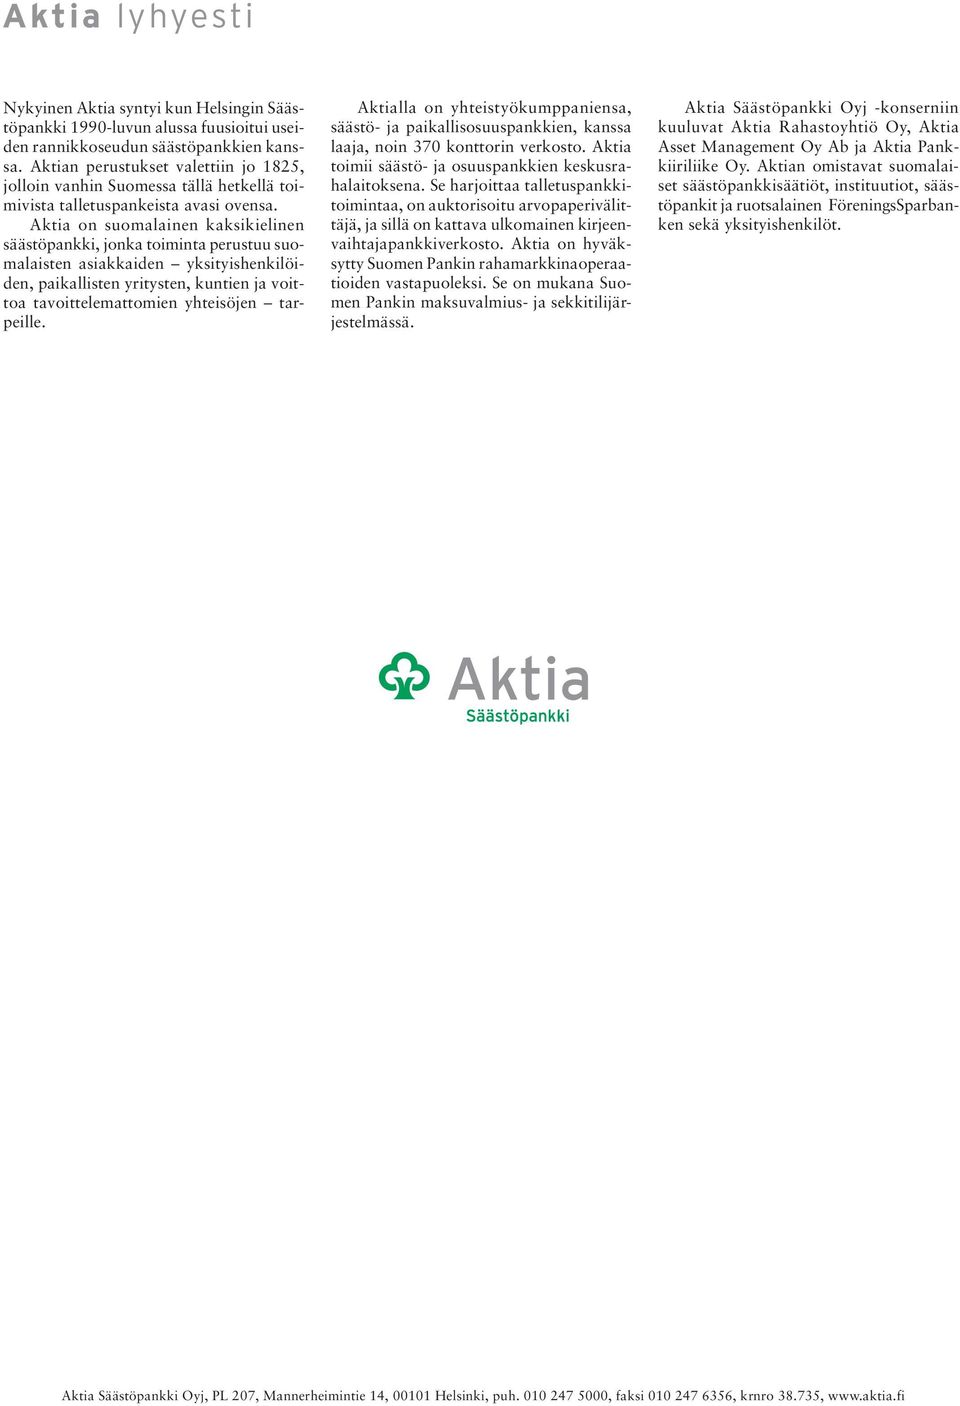 Aktia on suomalainen kaksikielinen säästöpankki, jonka toiminta perustuu suomalaisten asiakkaiden yksityishenkilöiden, paikallisten yritysten, kuntien ja voittoa tavoittelemattomien yhteisöjen